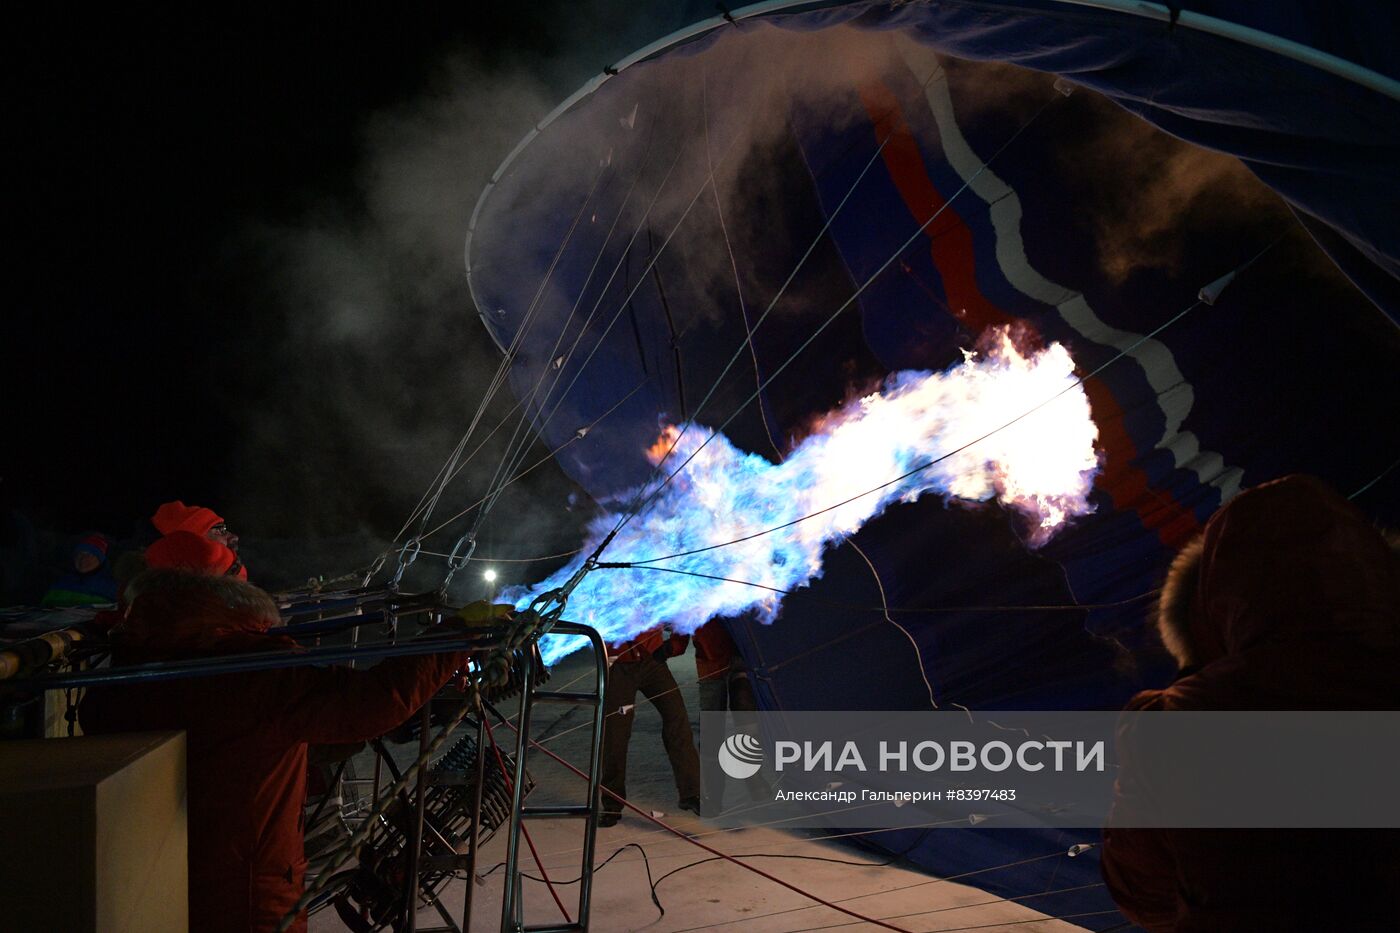 Старт полета Ф. Конюхова на воздушном шаре с попыткой установить два мировых рекорда